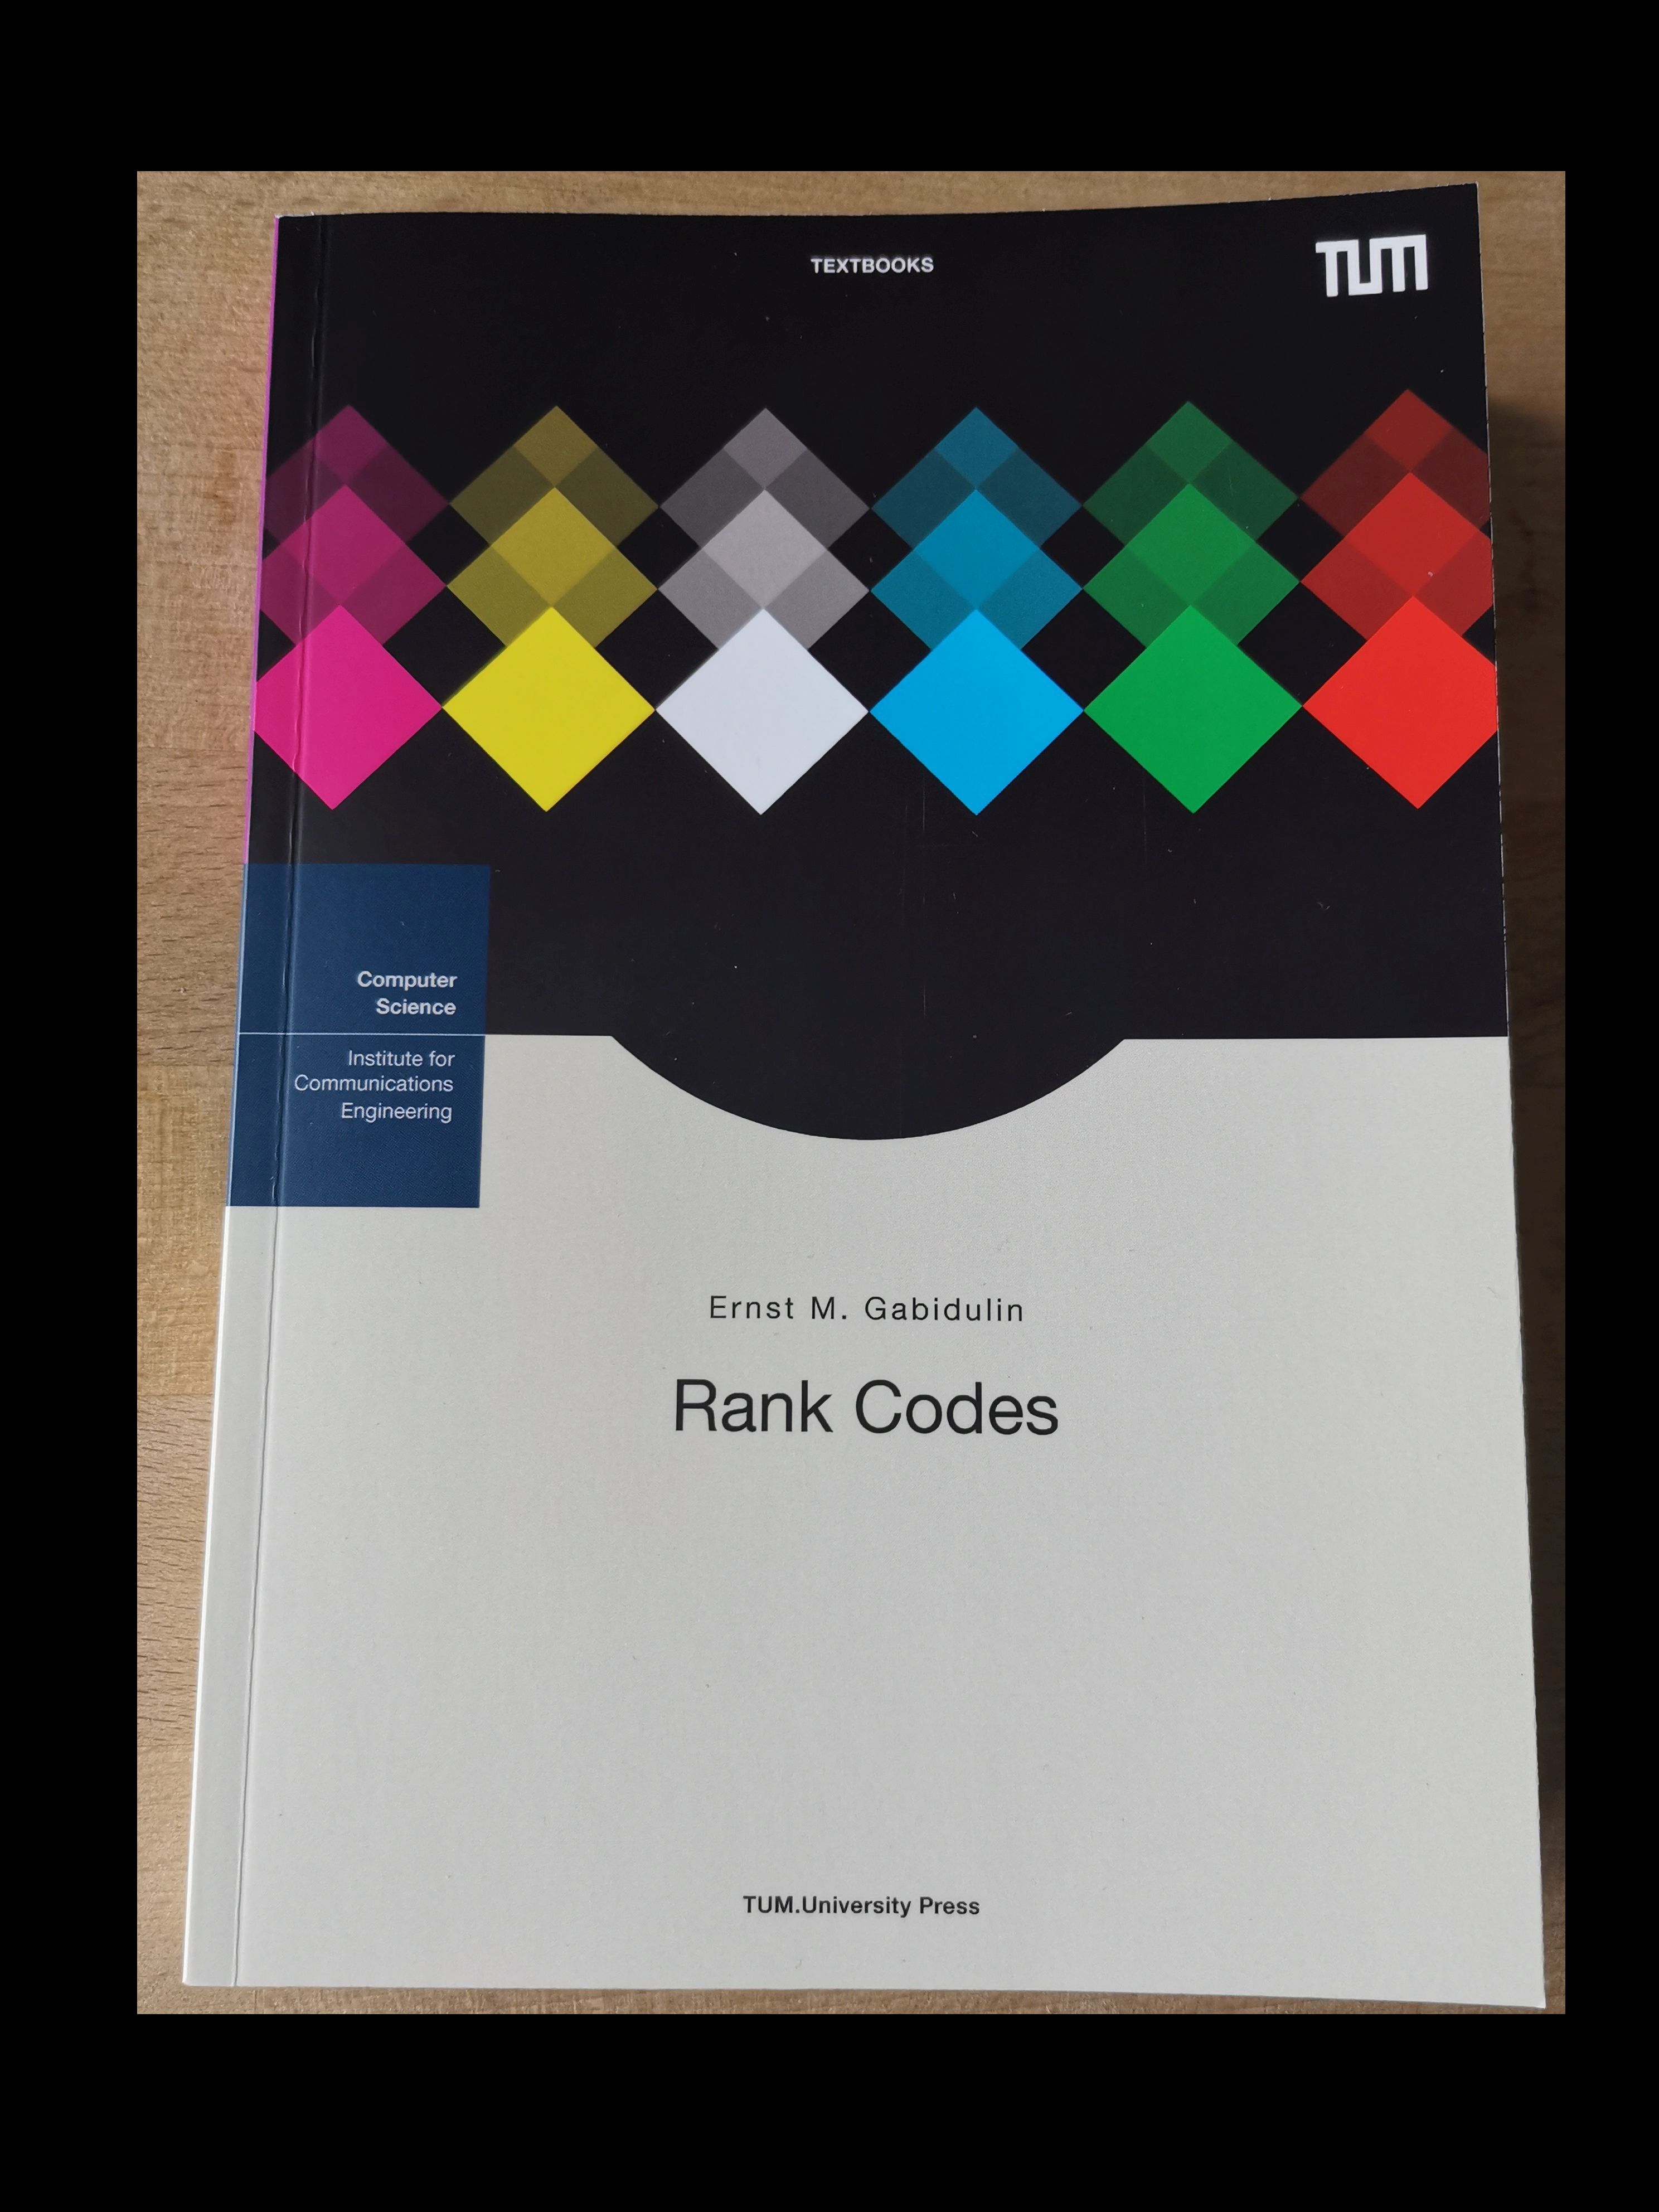 The book "Rank Codes" by E. Gabidulin